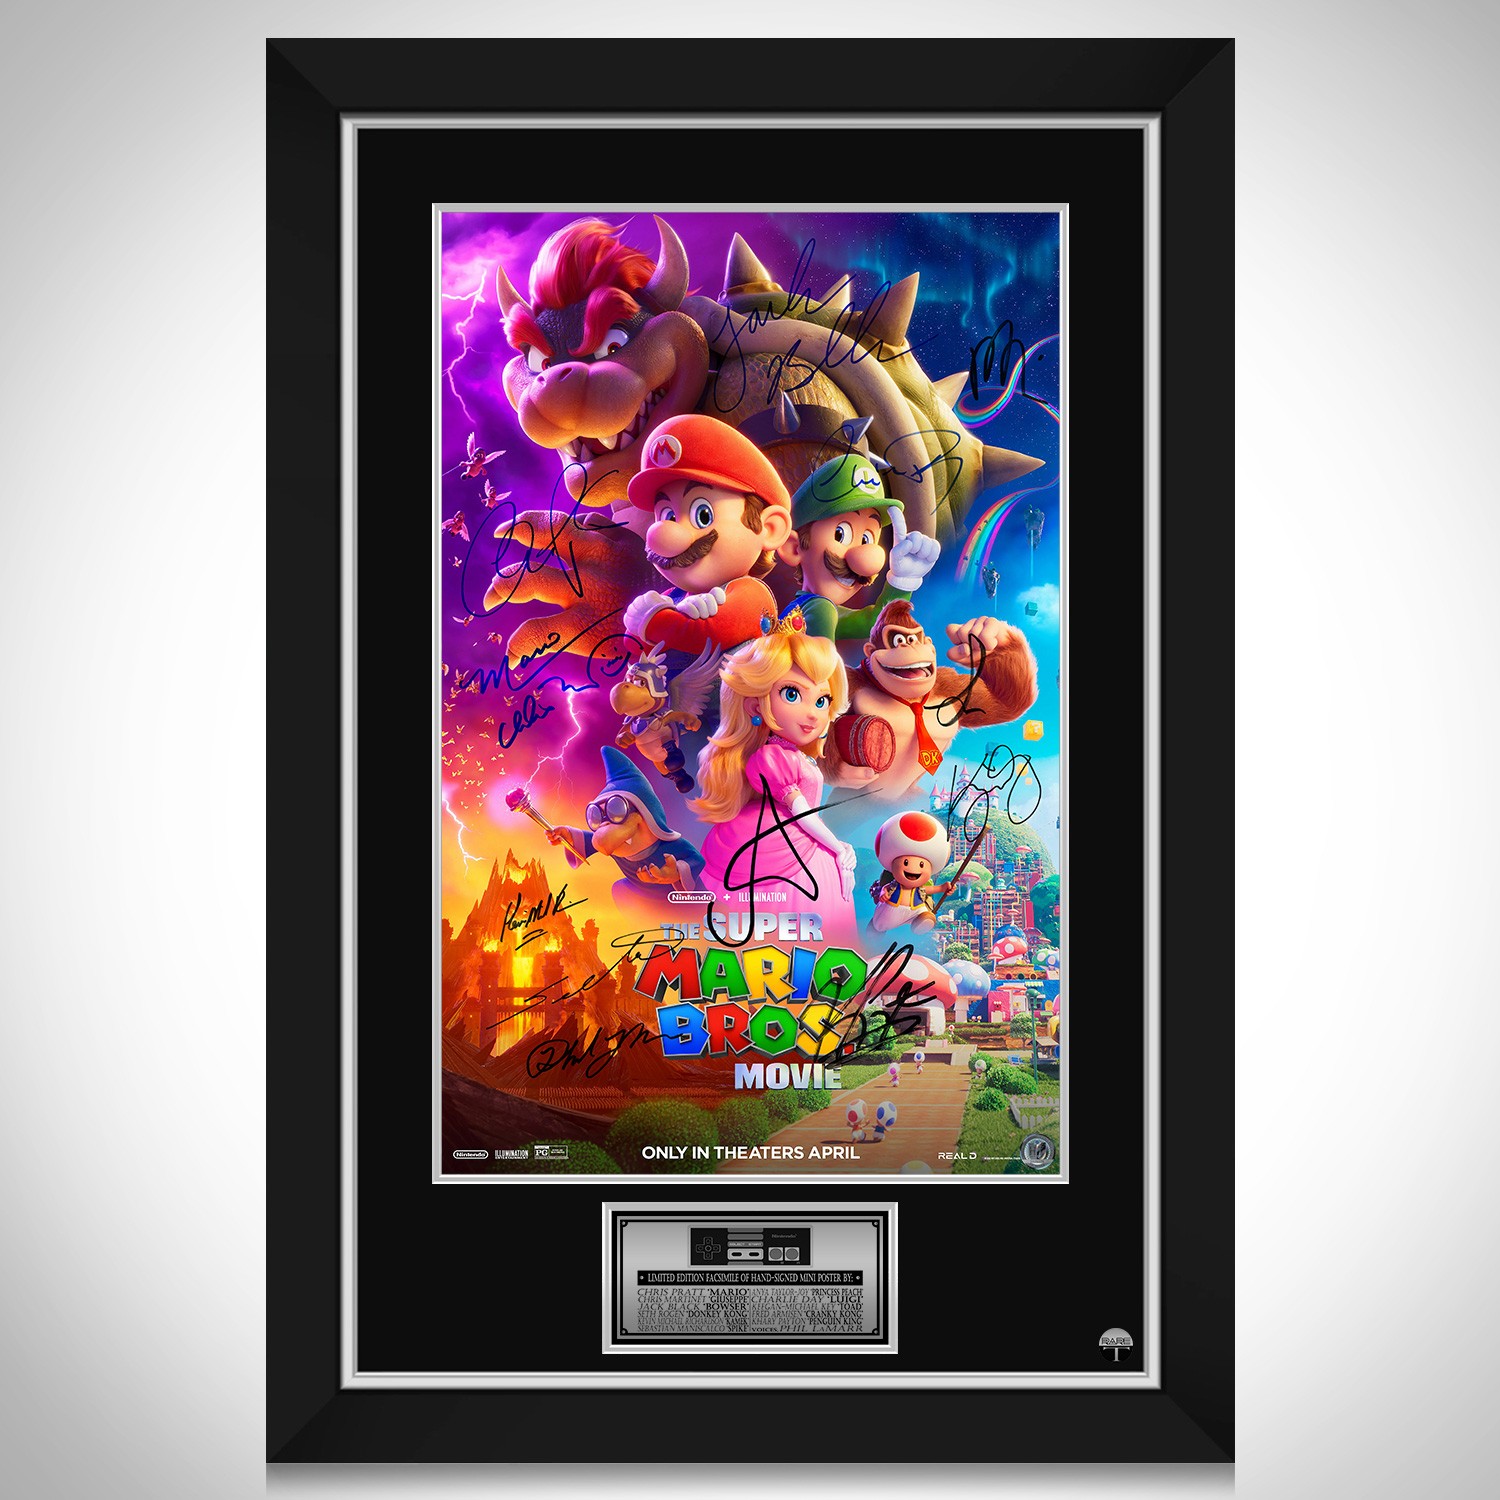 Super Mario Bros. 3 Poster -   Mario bros, Super mario art, Super  mario bros